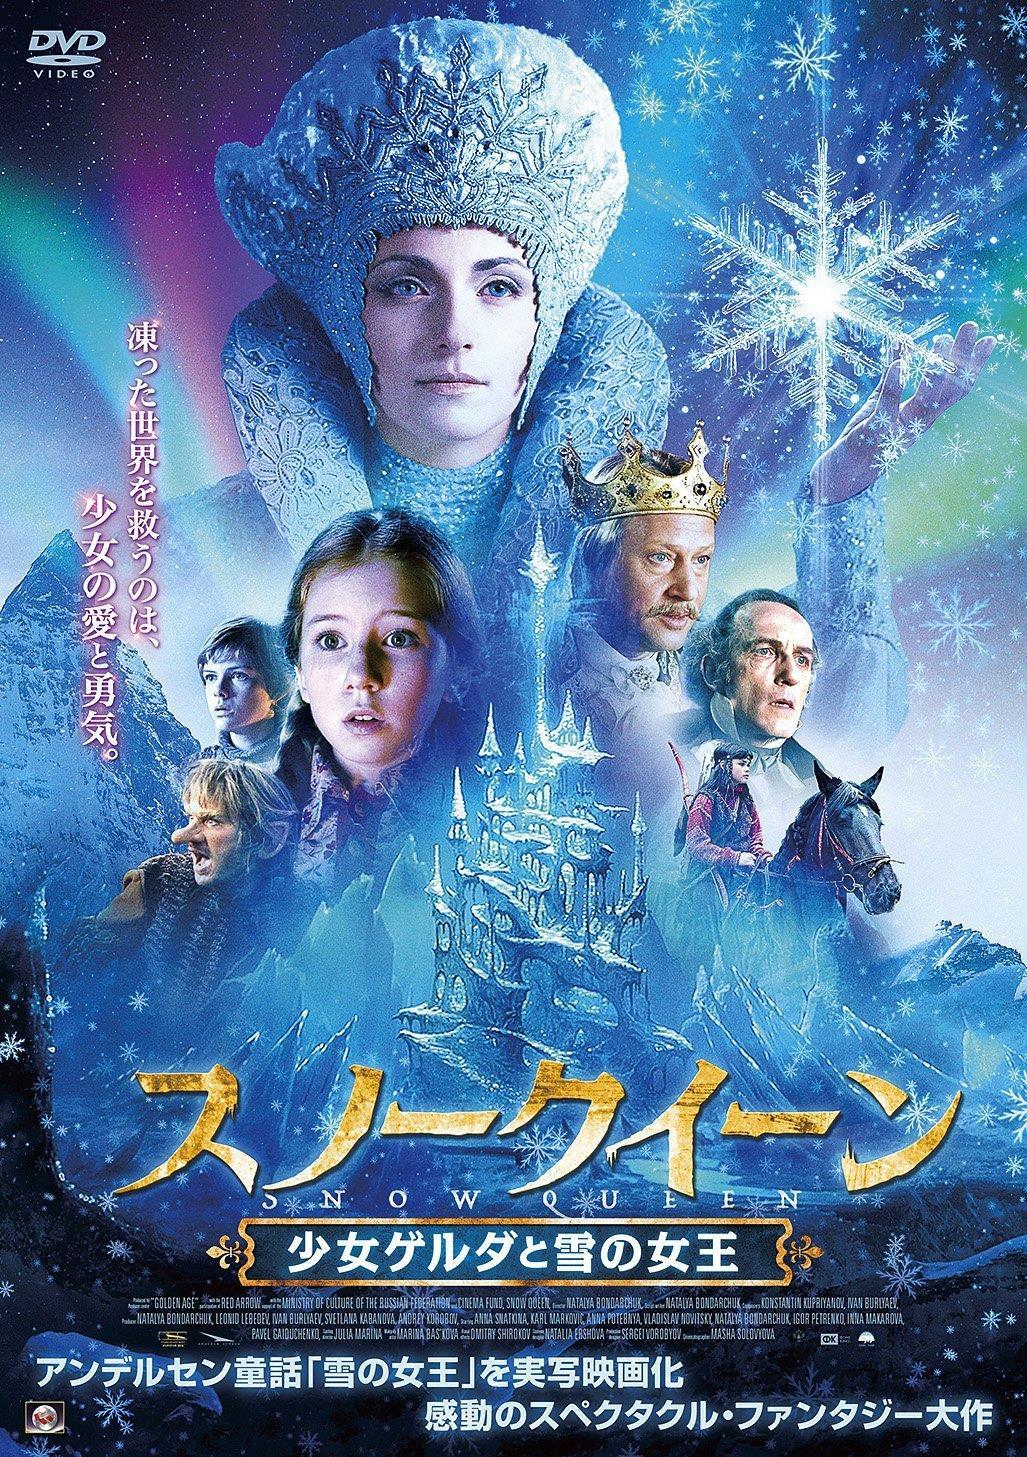 Постер фильма Тайна Снежной королевы